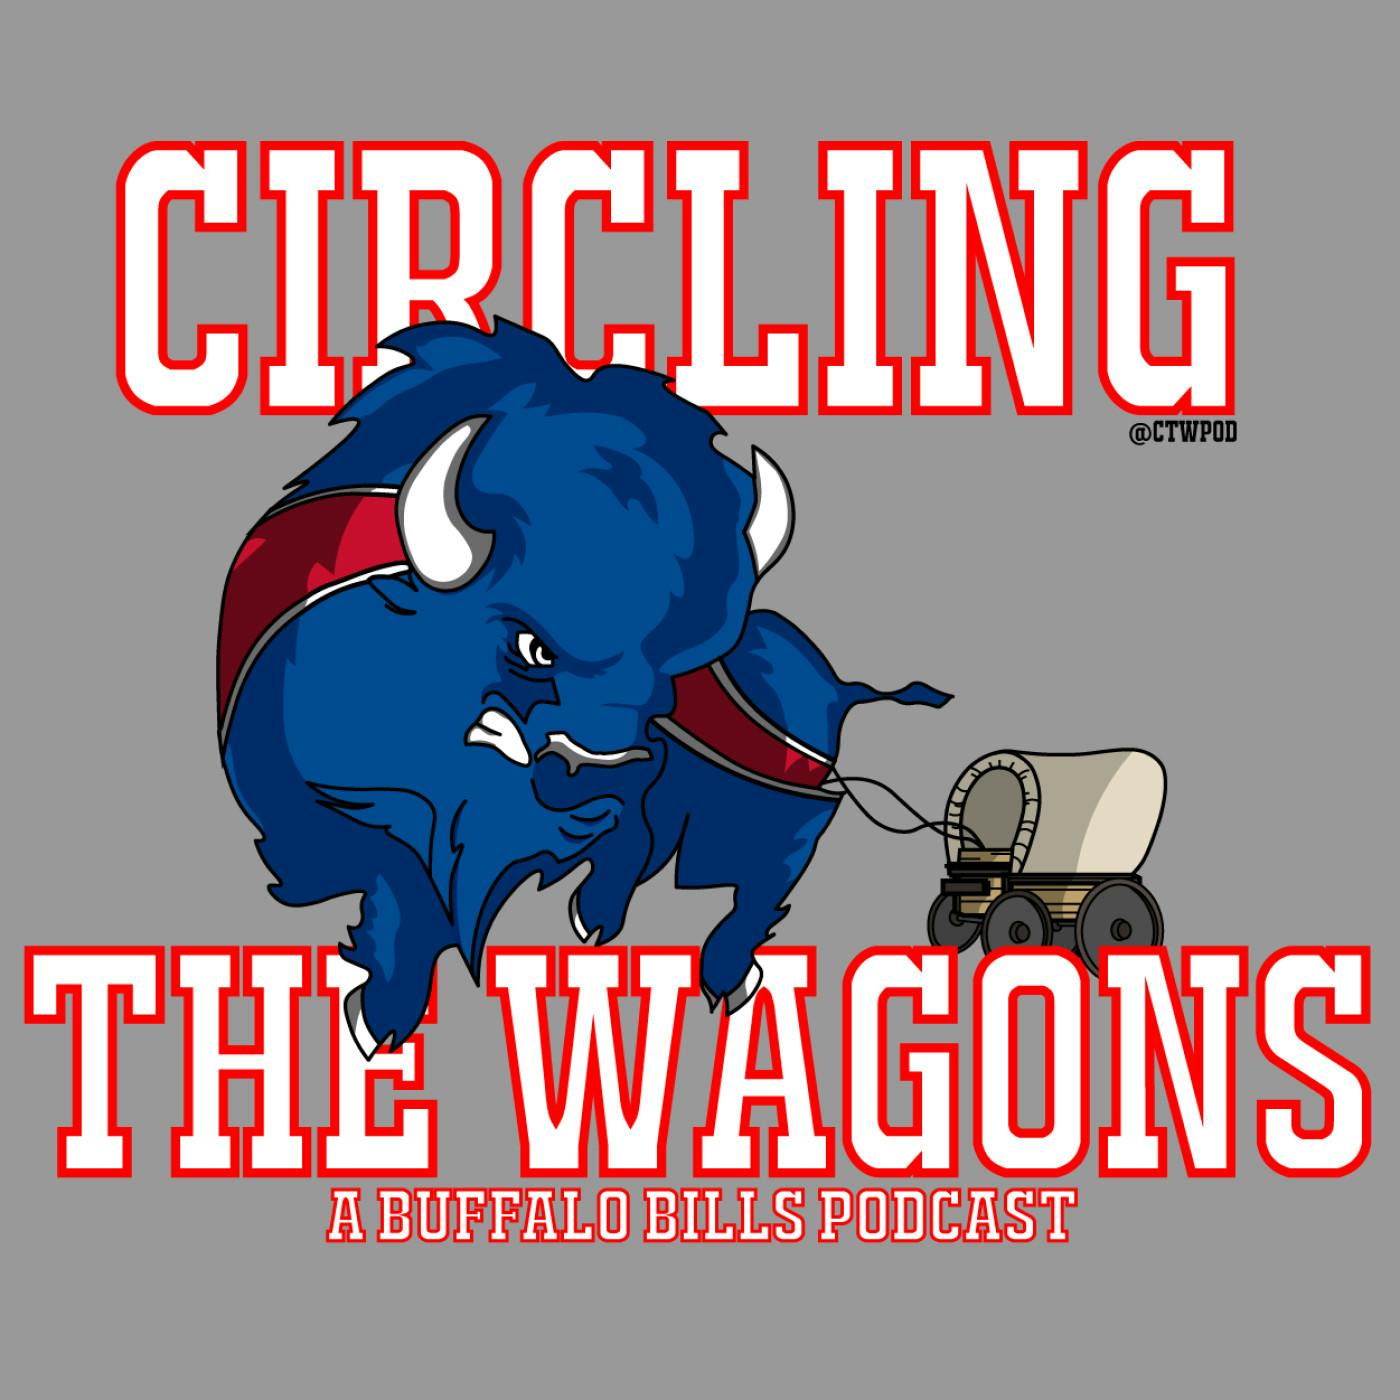 Circling the Wagons: Bills Lose to Texans 20-13, Week 6 Recap